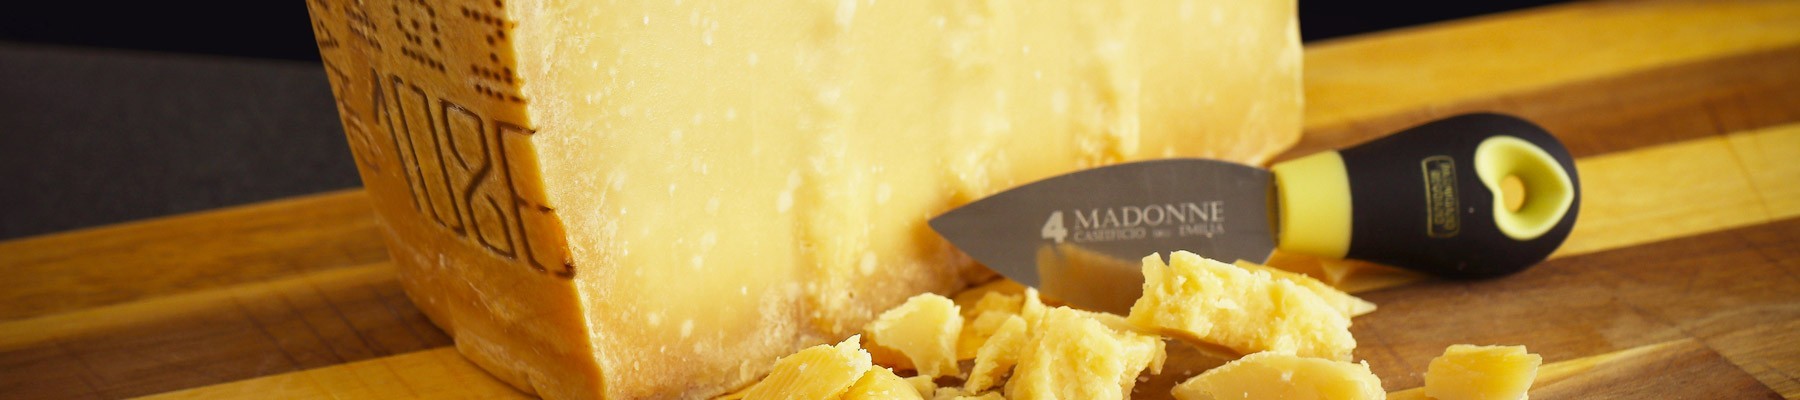 Bio Parmigiano Reggiano: Online Kaufen der Biologischer Parmesan Käse